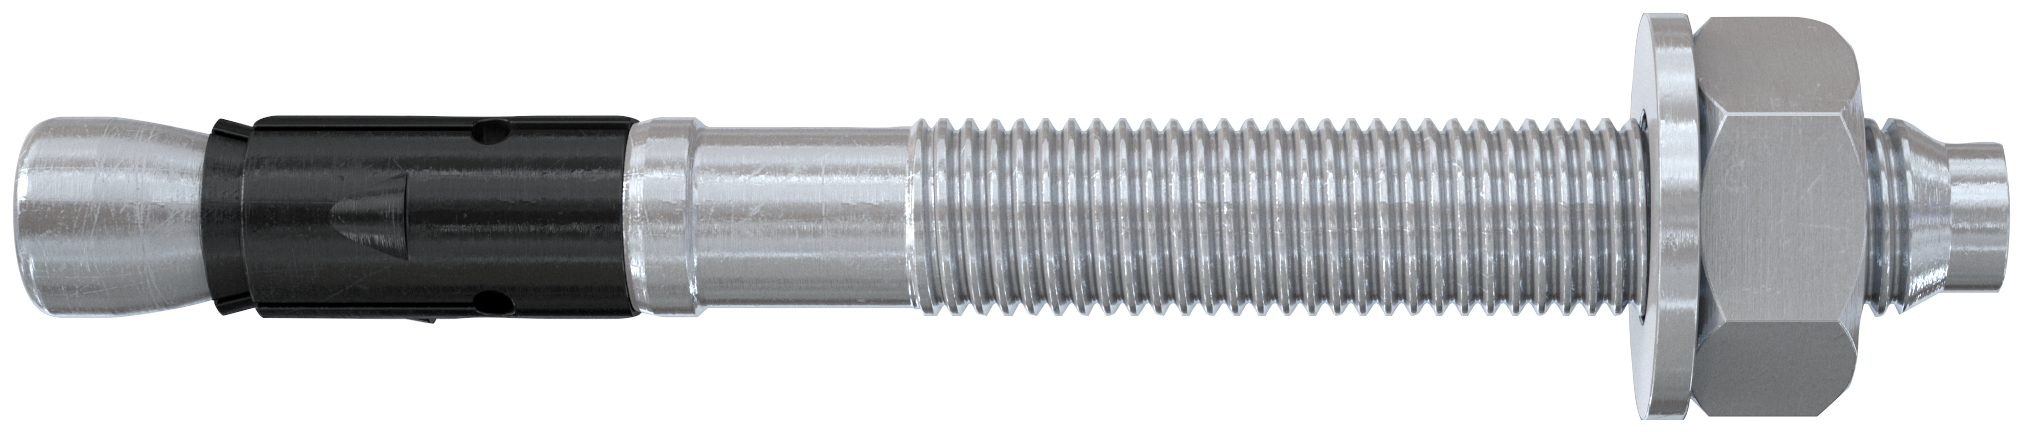 fischer Tassello acciaio FAZ II 16-100 (10 Pz.) L'ancorante ad espansione ad alte prestazioni per carichi statici su calcestruzzo fessurato e per applicazioni sismiche. Versione in acciaio zincato. fie1142